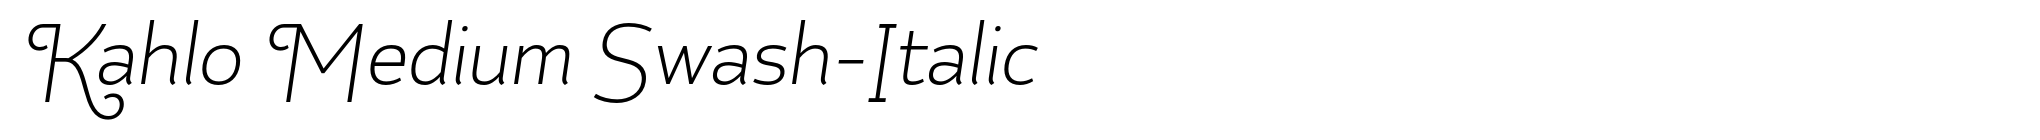 Kahlo Medium Swash-Italic image